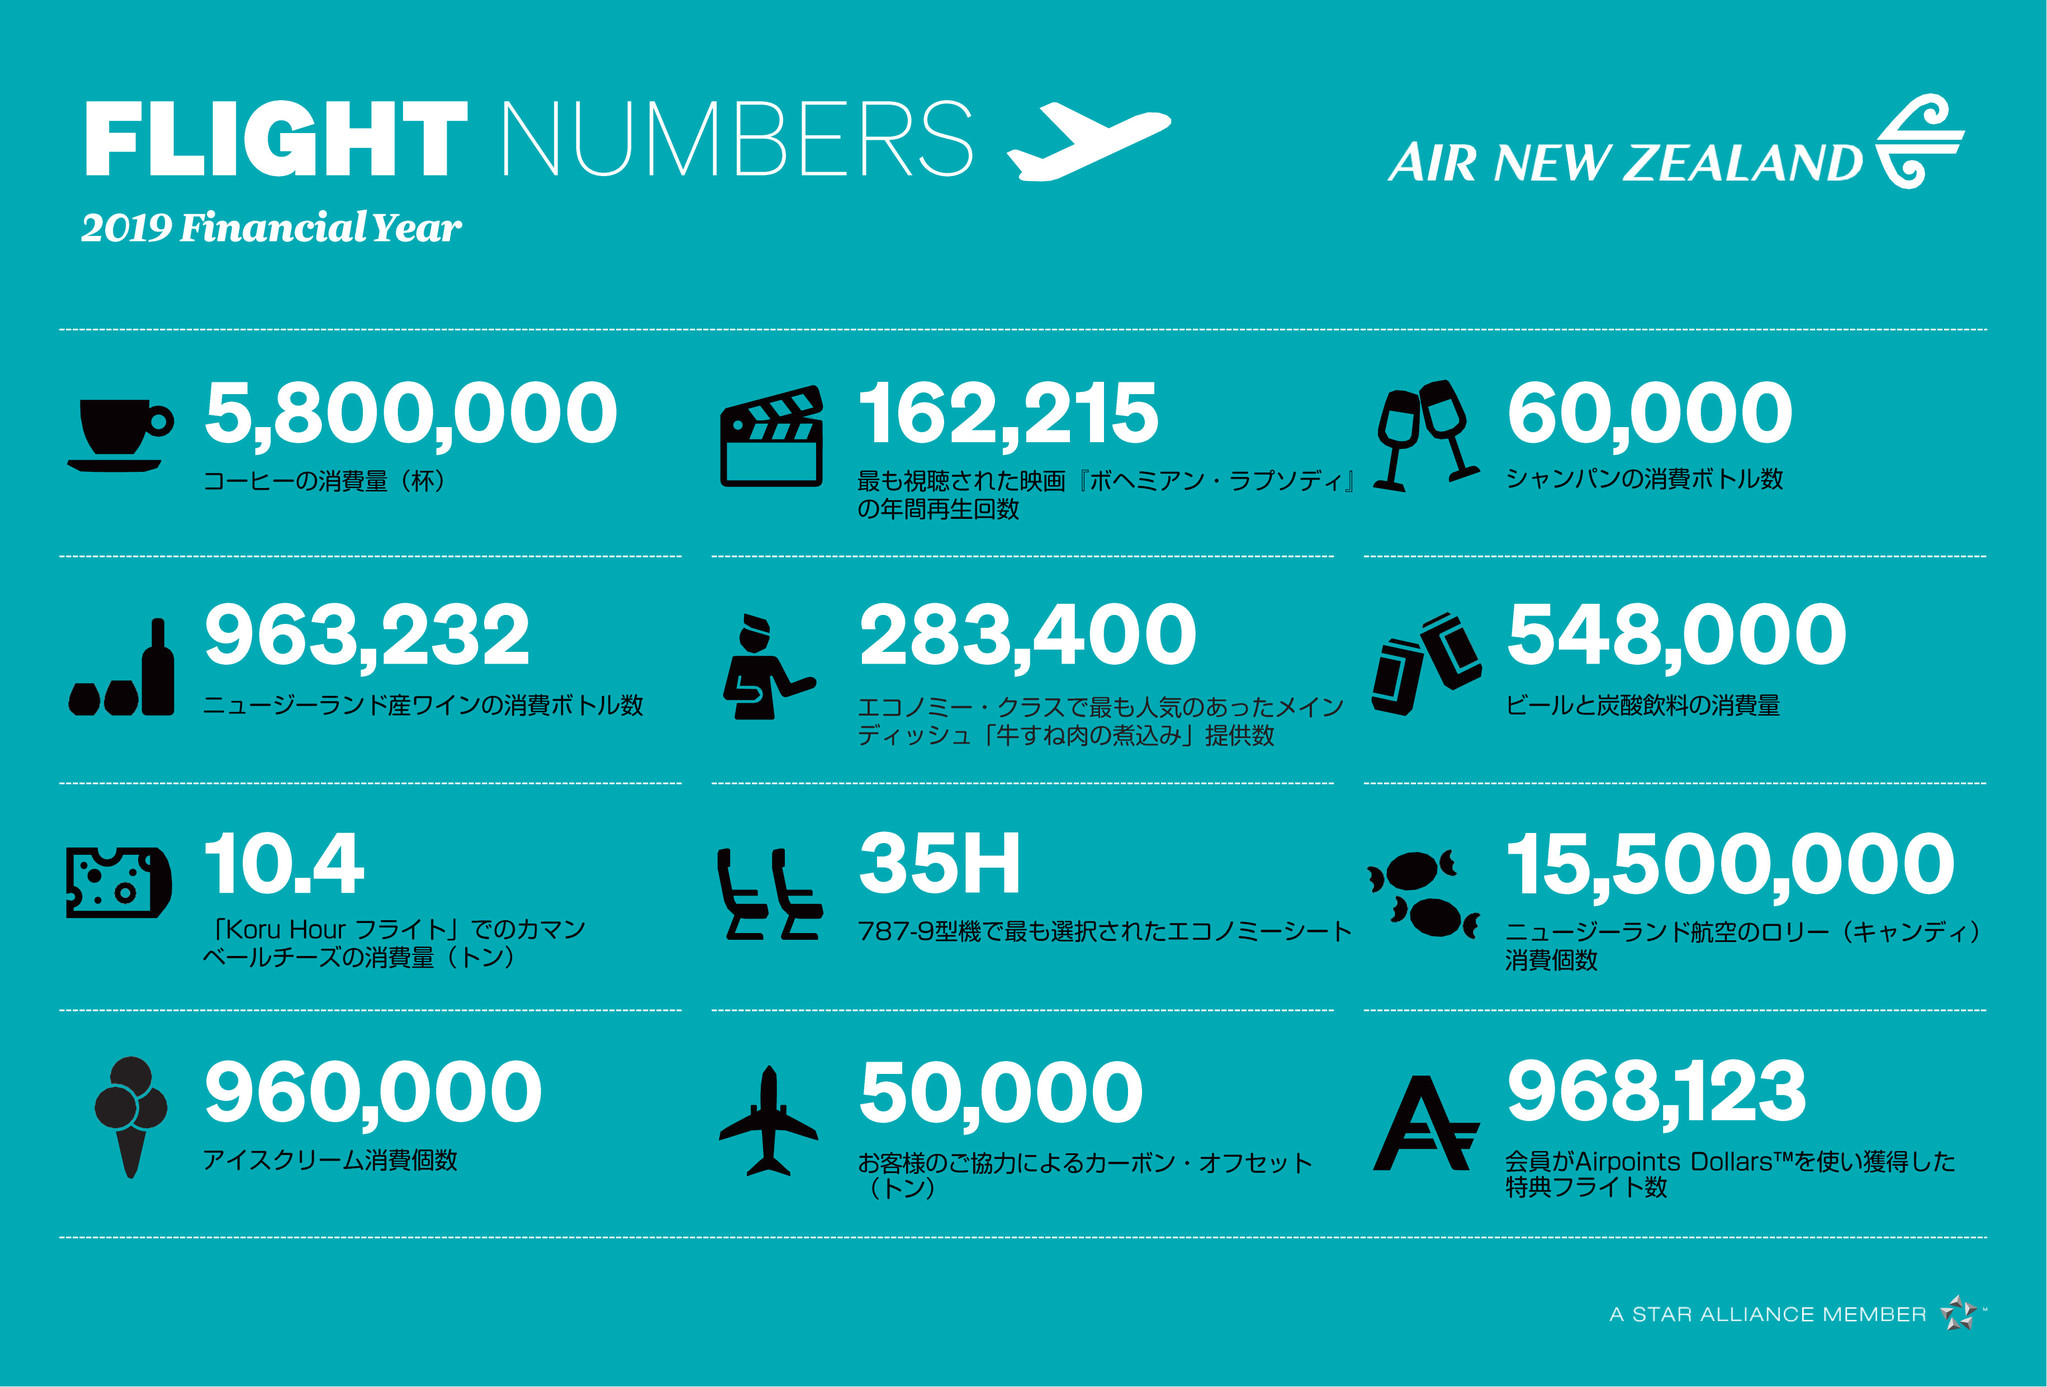 ニュージーランド航空 過去 1 年間の様々な機内データを発表 ニュージーランド航空 日本地区のプレスリリース